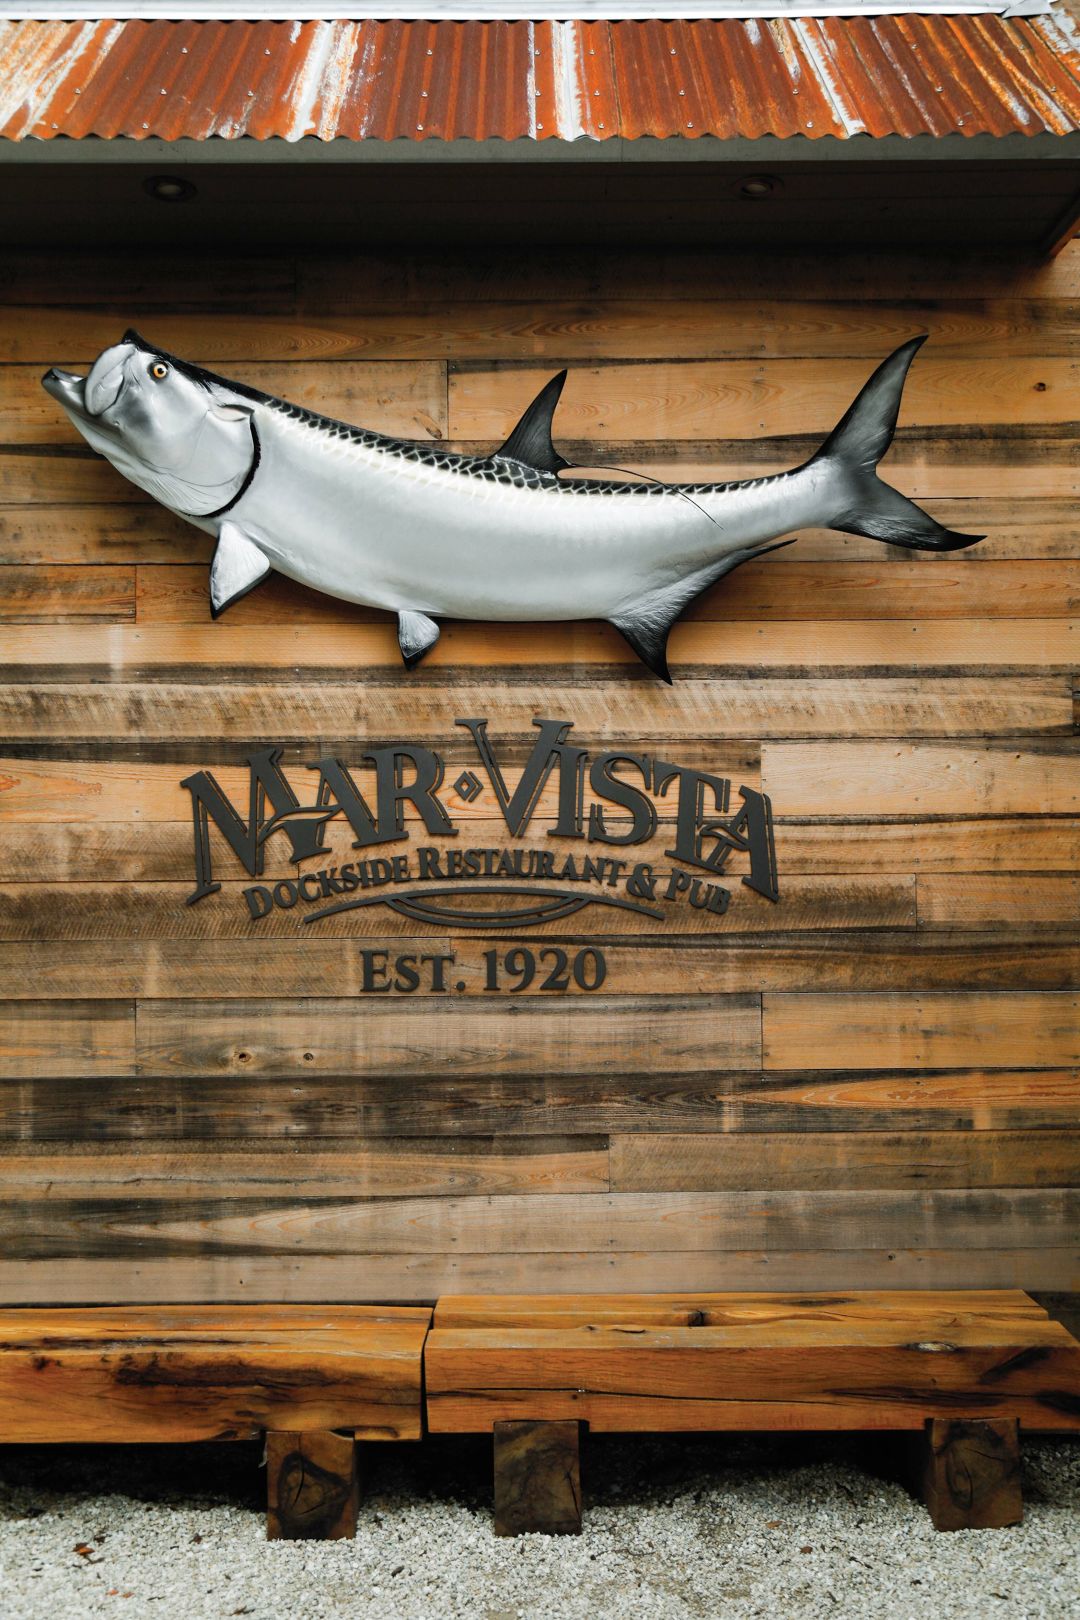 Mar Vista Dockside Restaurant & Pub